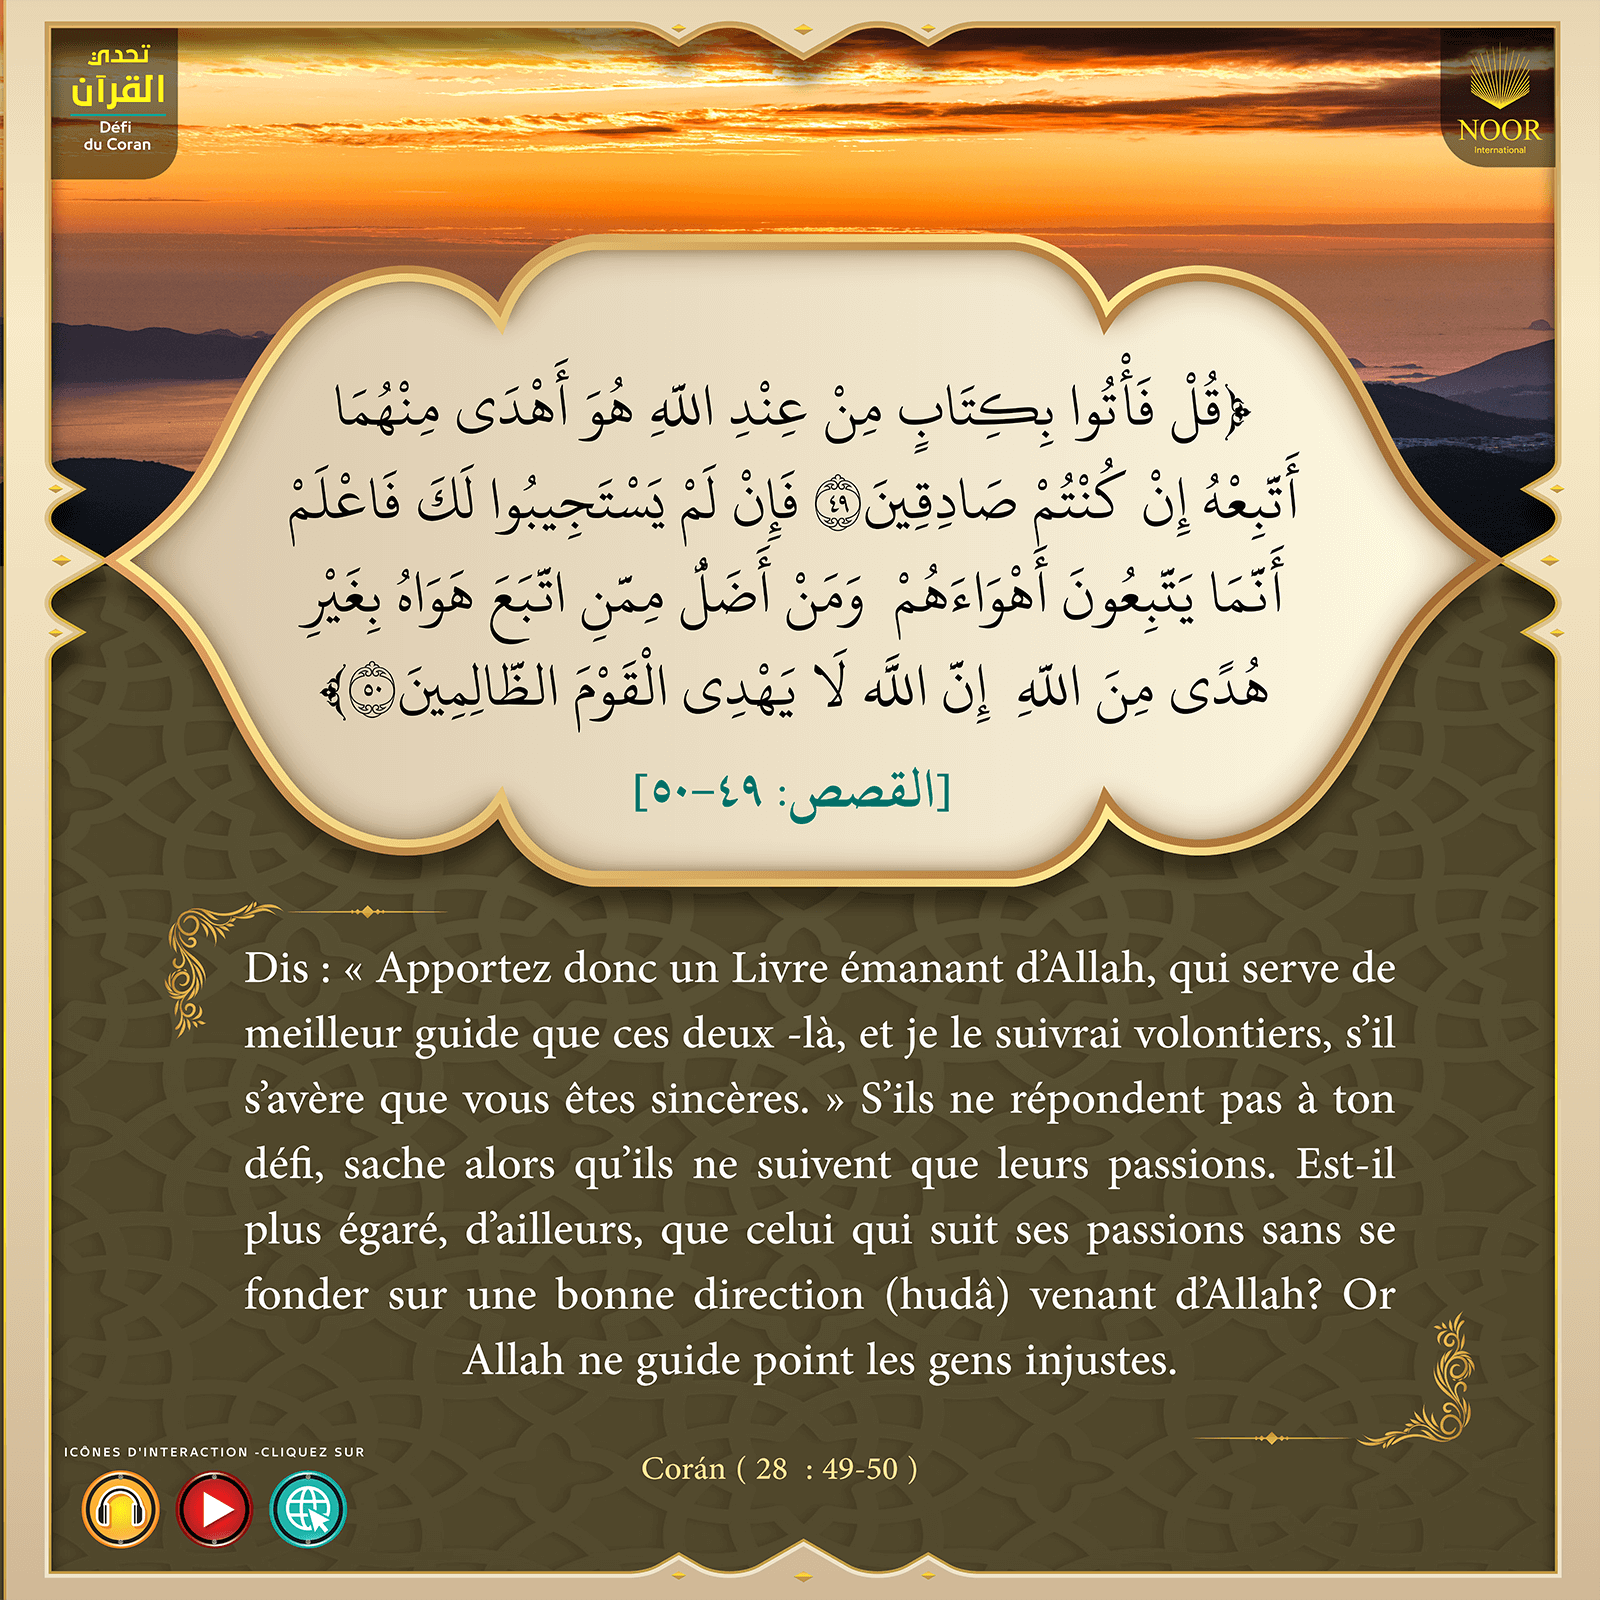 "Dis : « Apportez donc un Livre émanant d’Allah,..."